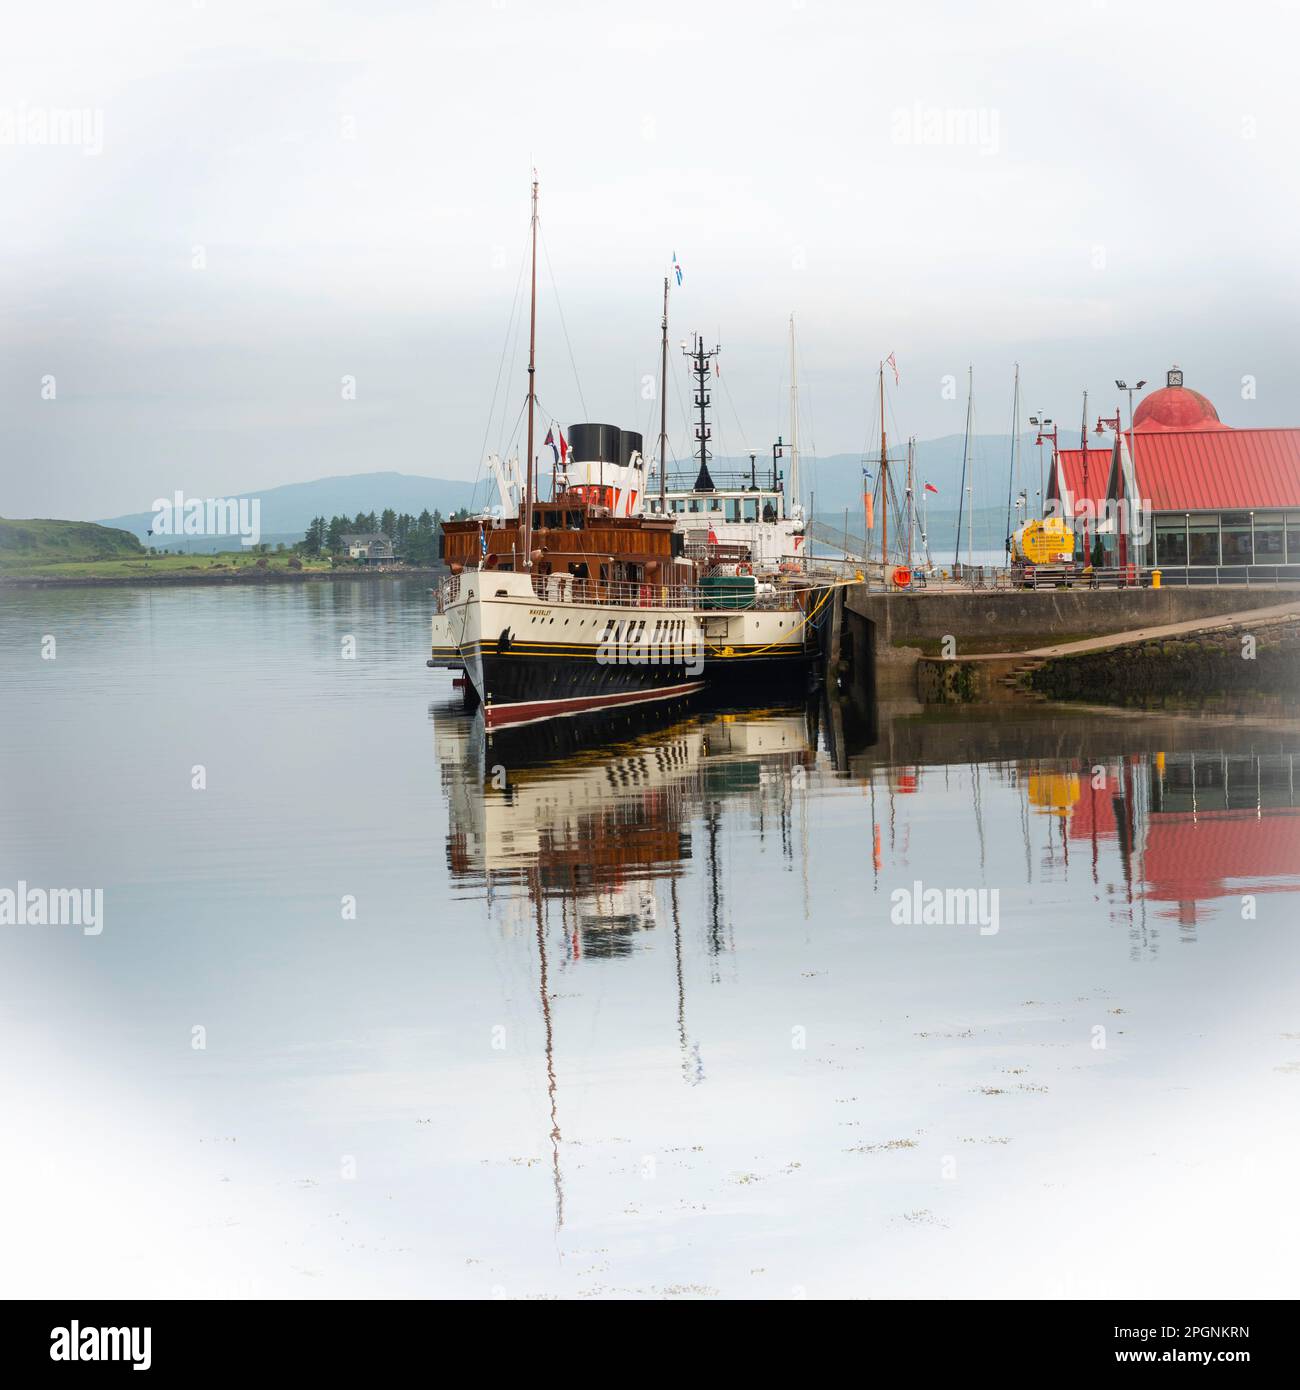 Argyll Ecosse. Bateau à aubes Waverley amarré dans le port d'Oban avec la ville et des bateaux de pêche Banque D'Images